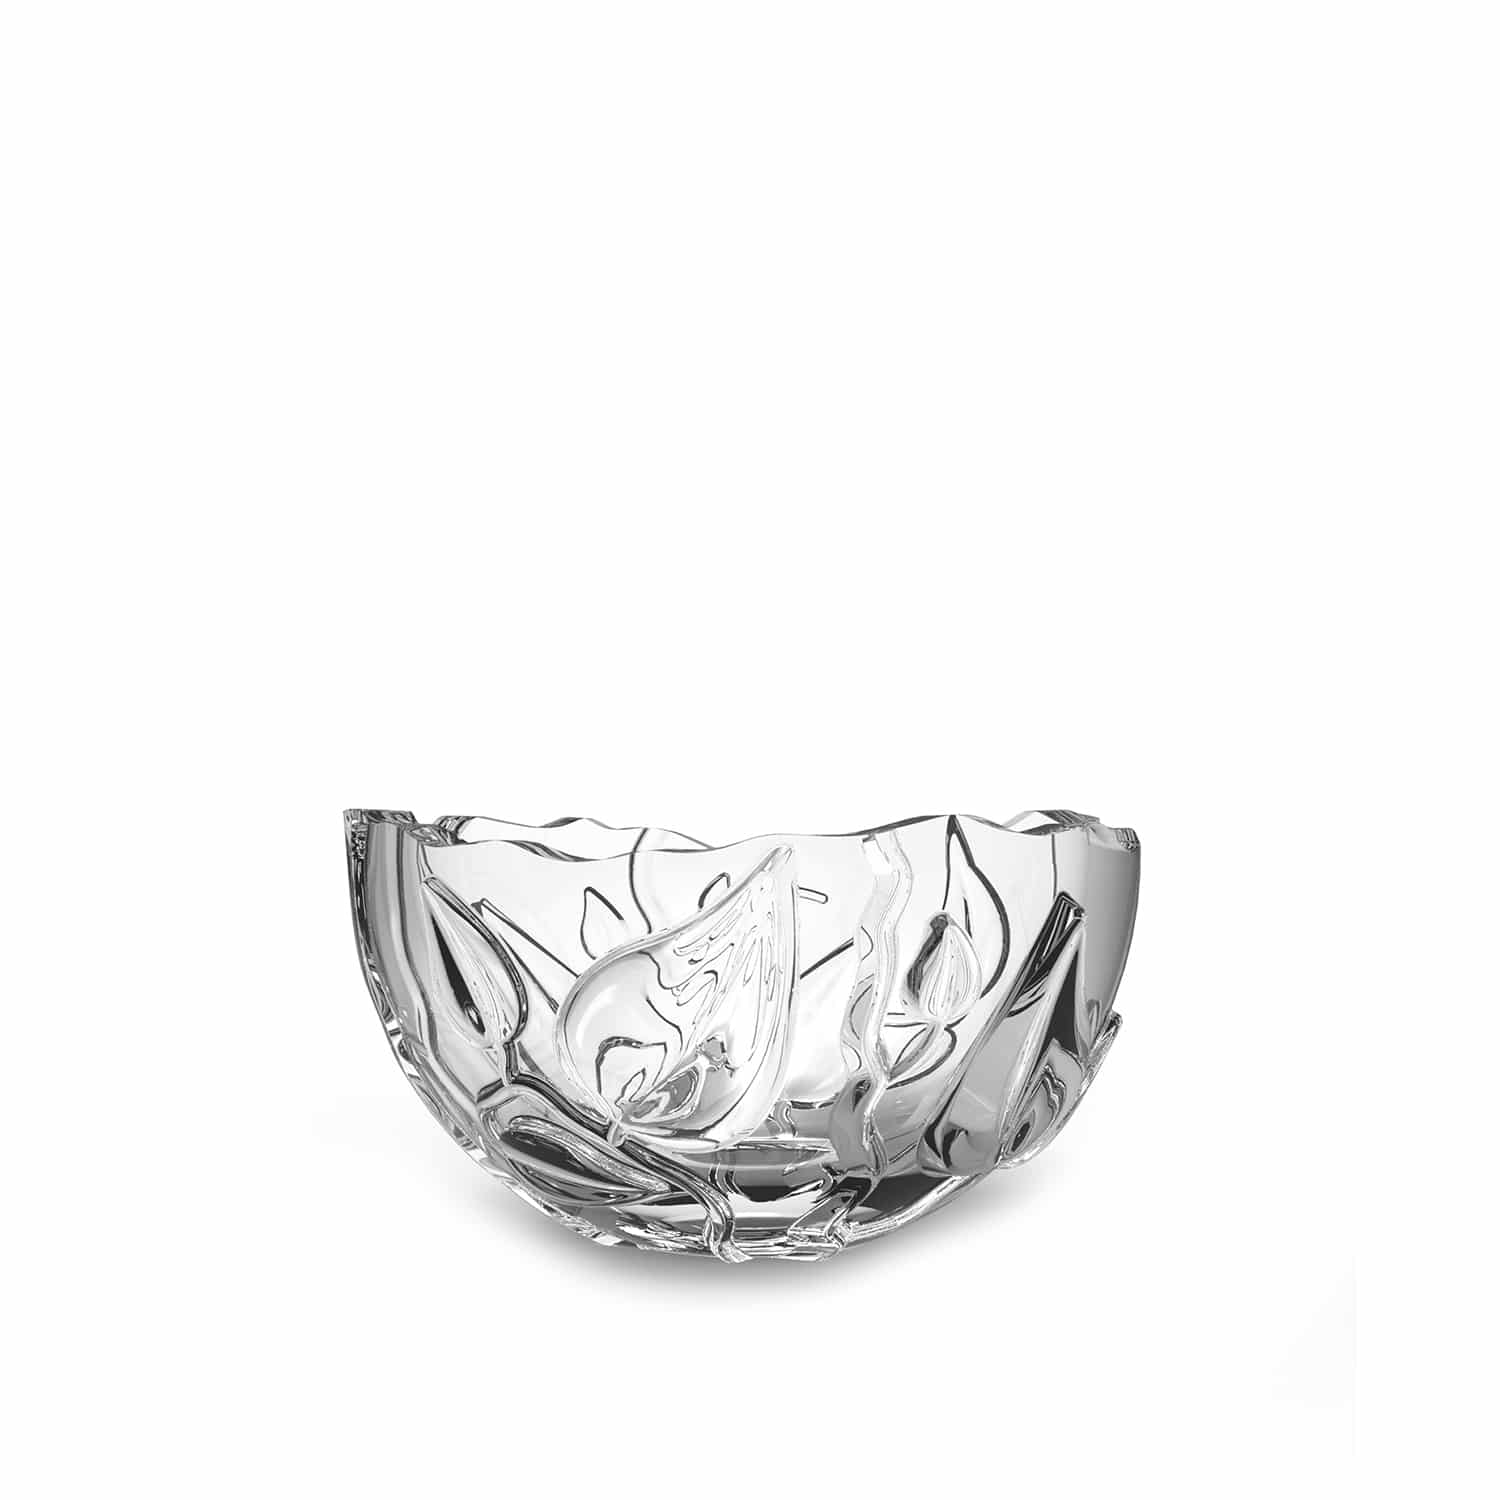 Designer crystal serving bowl